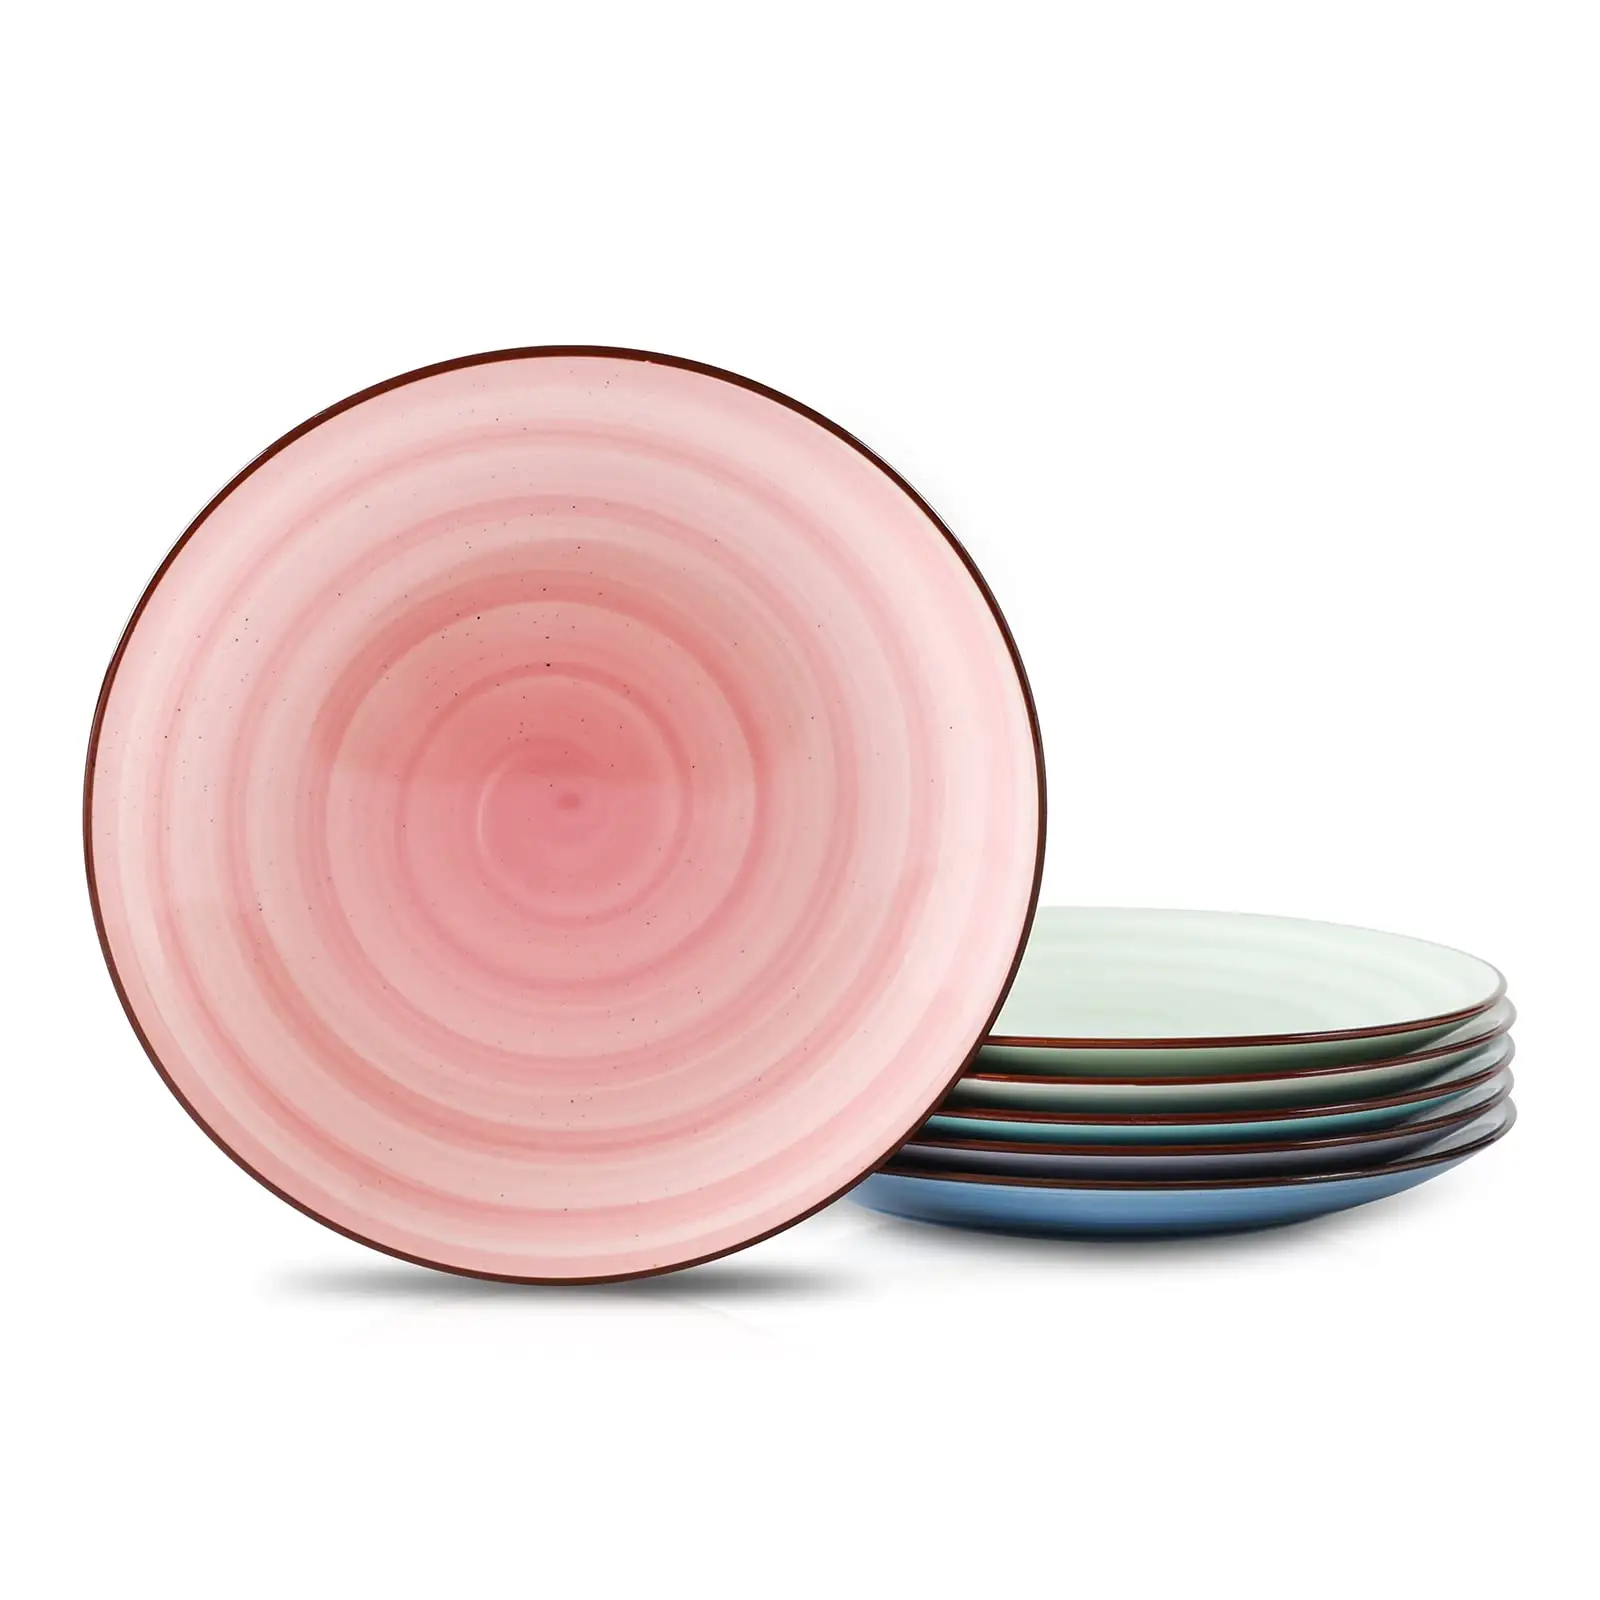 Tivray-plato de cerámica de porcelana pintado a mano clásico, platos planos redondos para el hogar, restaurante, fruta rosa púrpura, plato de cerámica para ensalada